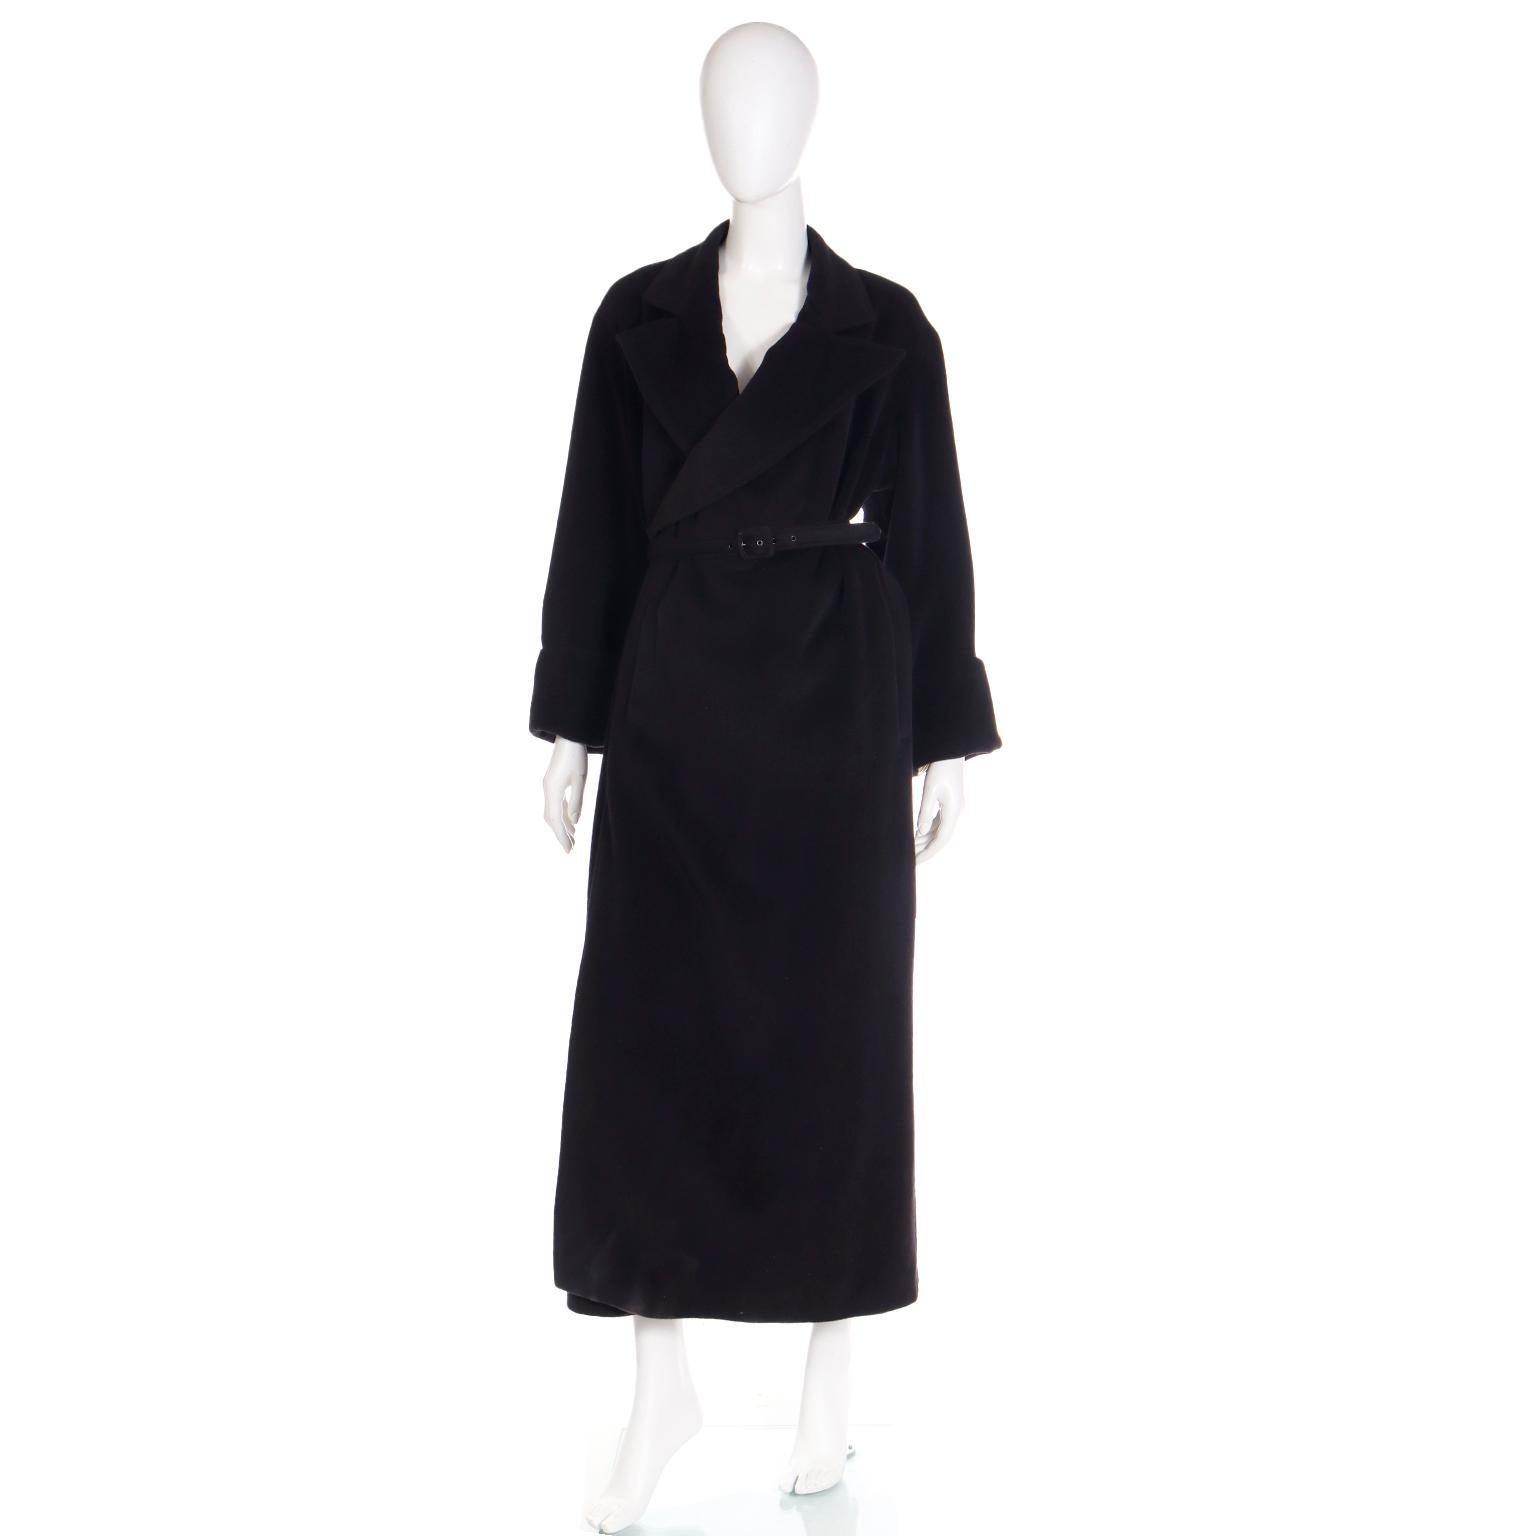 Dieser schwarze Wickelmantel von Jean Paul Gaultier Classique aus dem Jahr 2000 lässt sich ganz einfach tragen und in eine moderne Garderobe integrieren. Dieser Mantel ist mühelos zu tragen und wird mit dem Originalgürtel geliefert, der für mehr